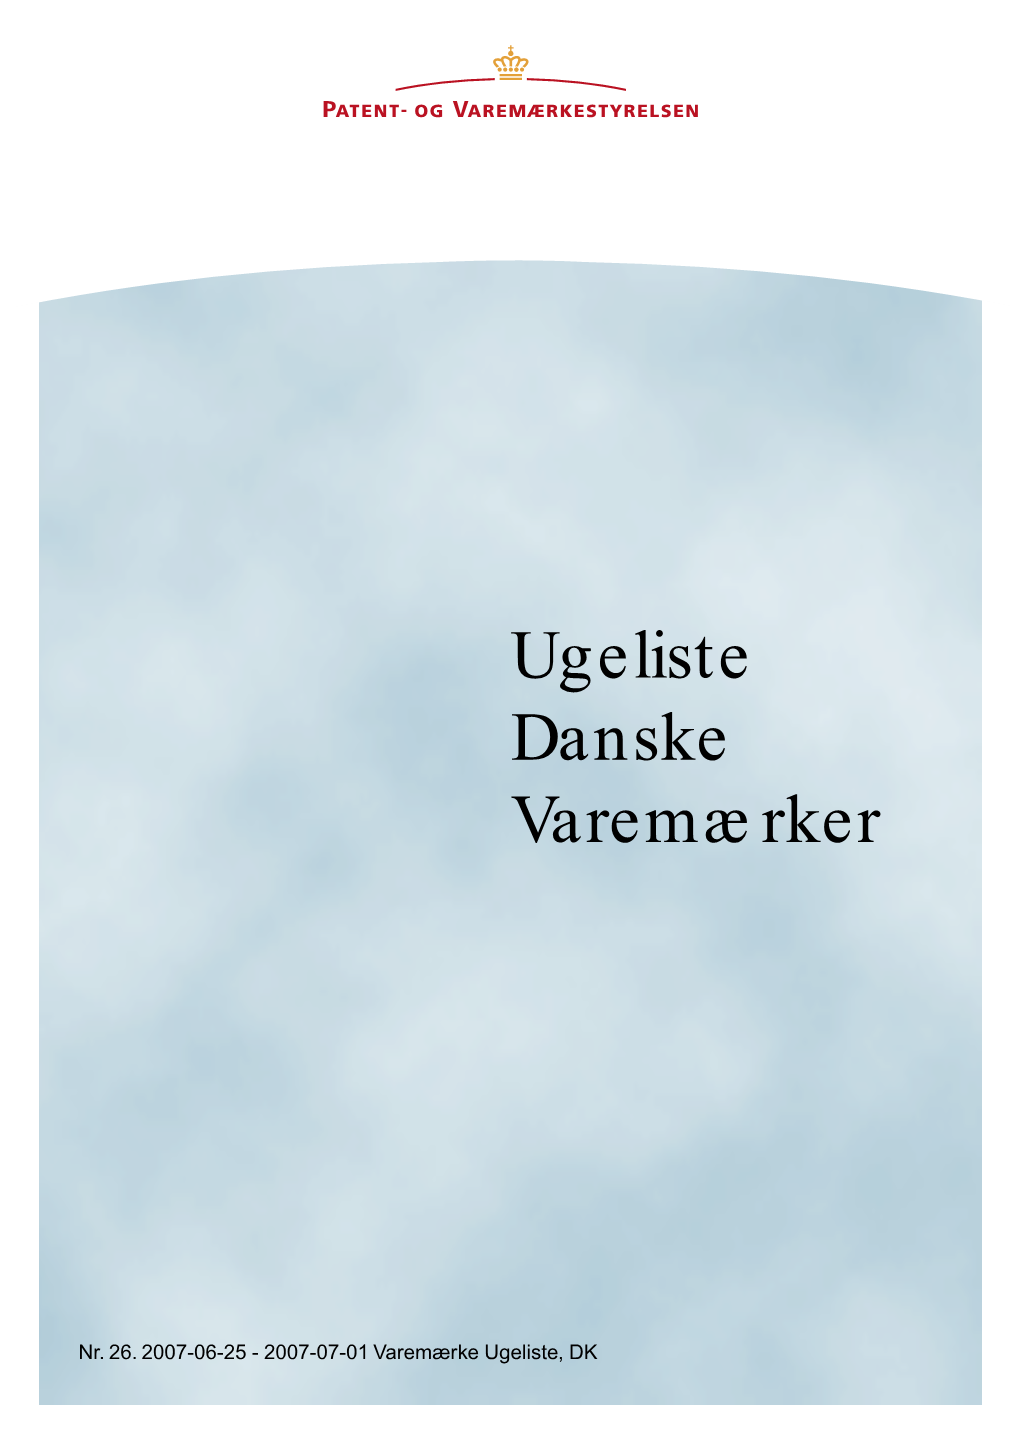 Varemærke Ugeliste, DK 26, 2007